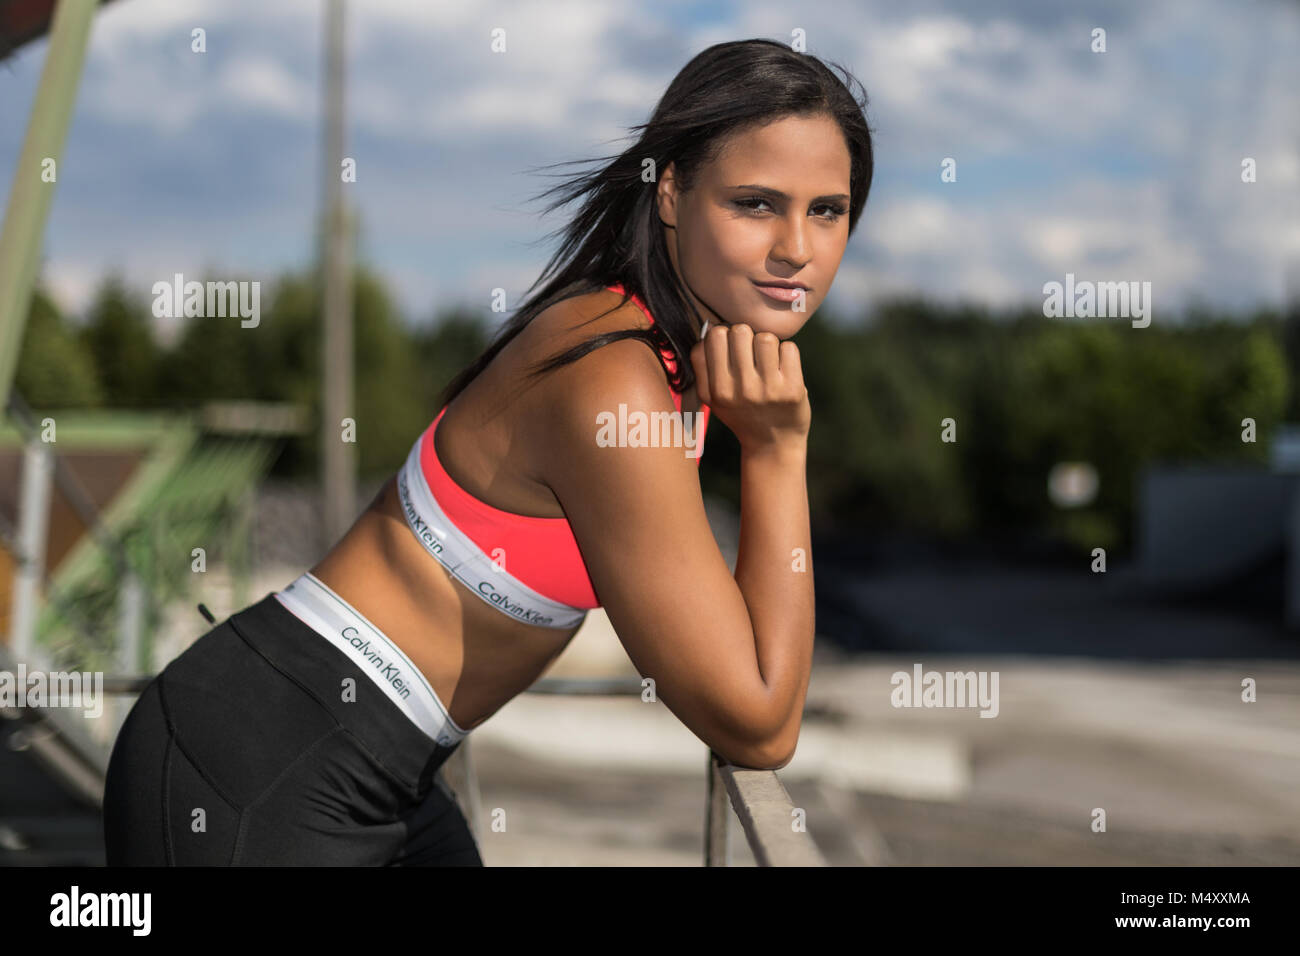 Junge Frau im sportlichen Outfit Stockfoto